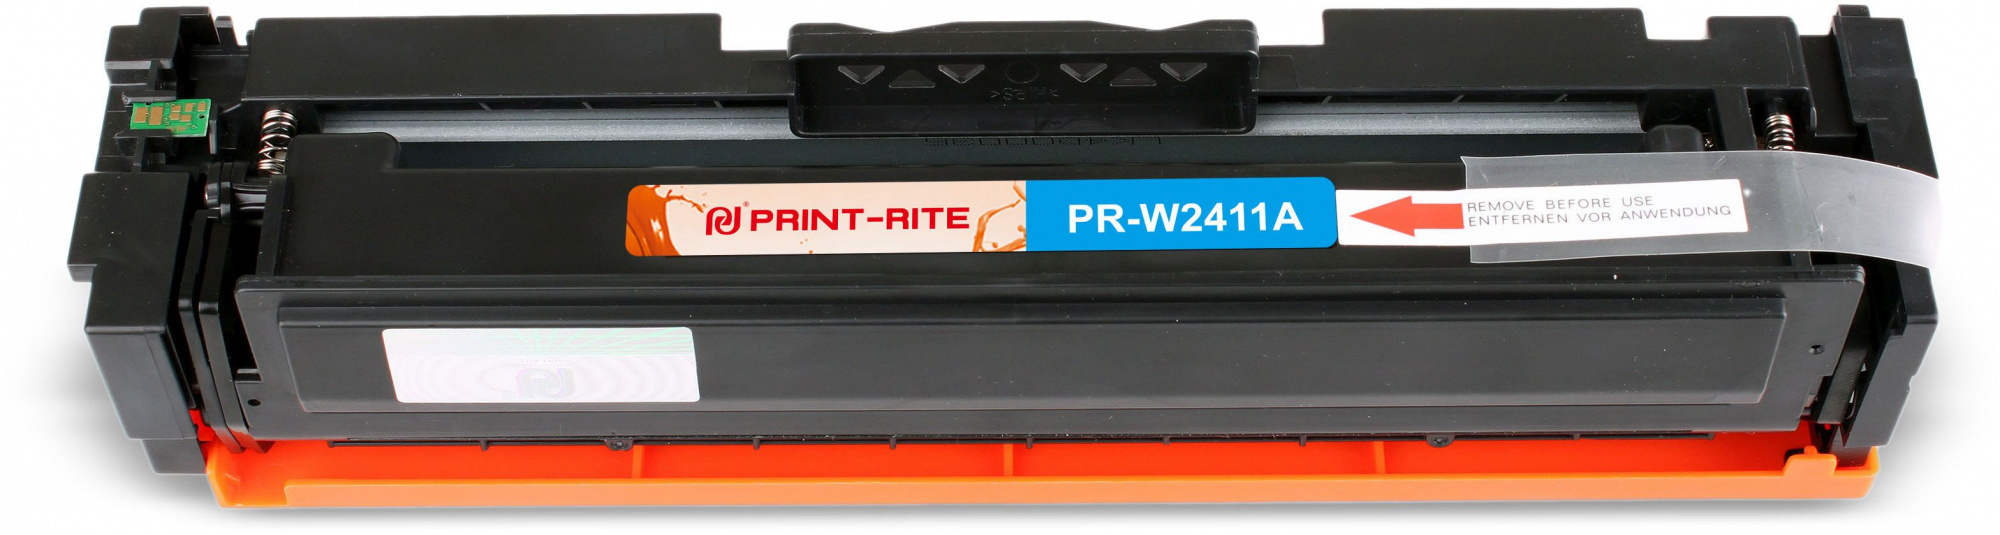   Print-Rite TFHBB5CPU1J PR-W2411A W2411A  (850.)  HP Color LaserJet Pro M155/MFP M182nw/M183fw